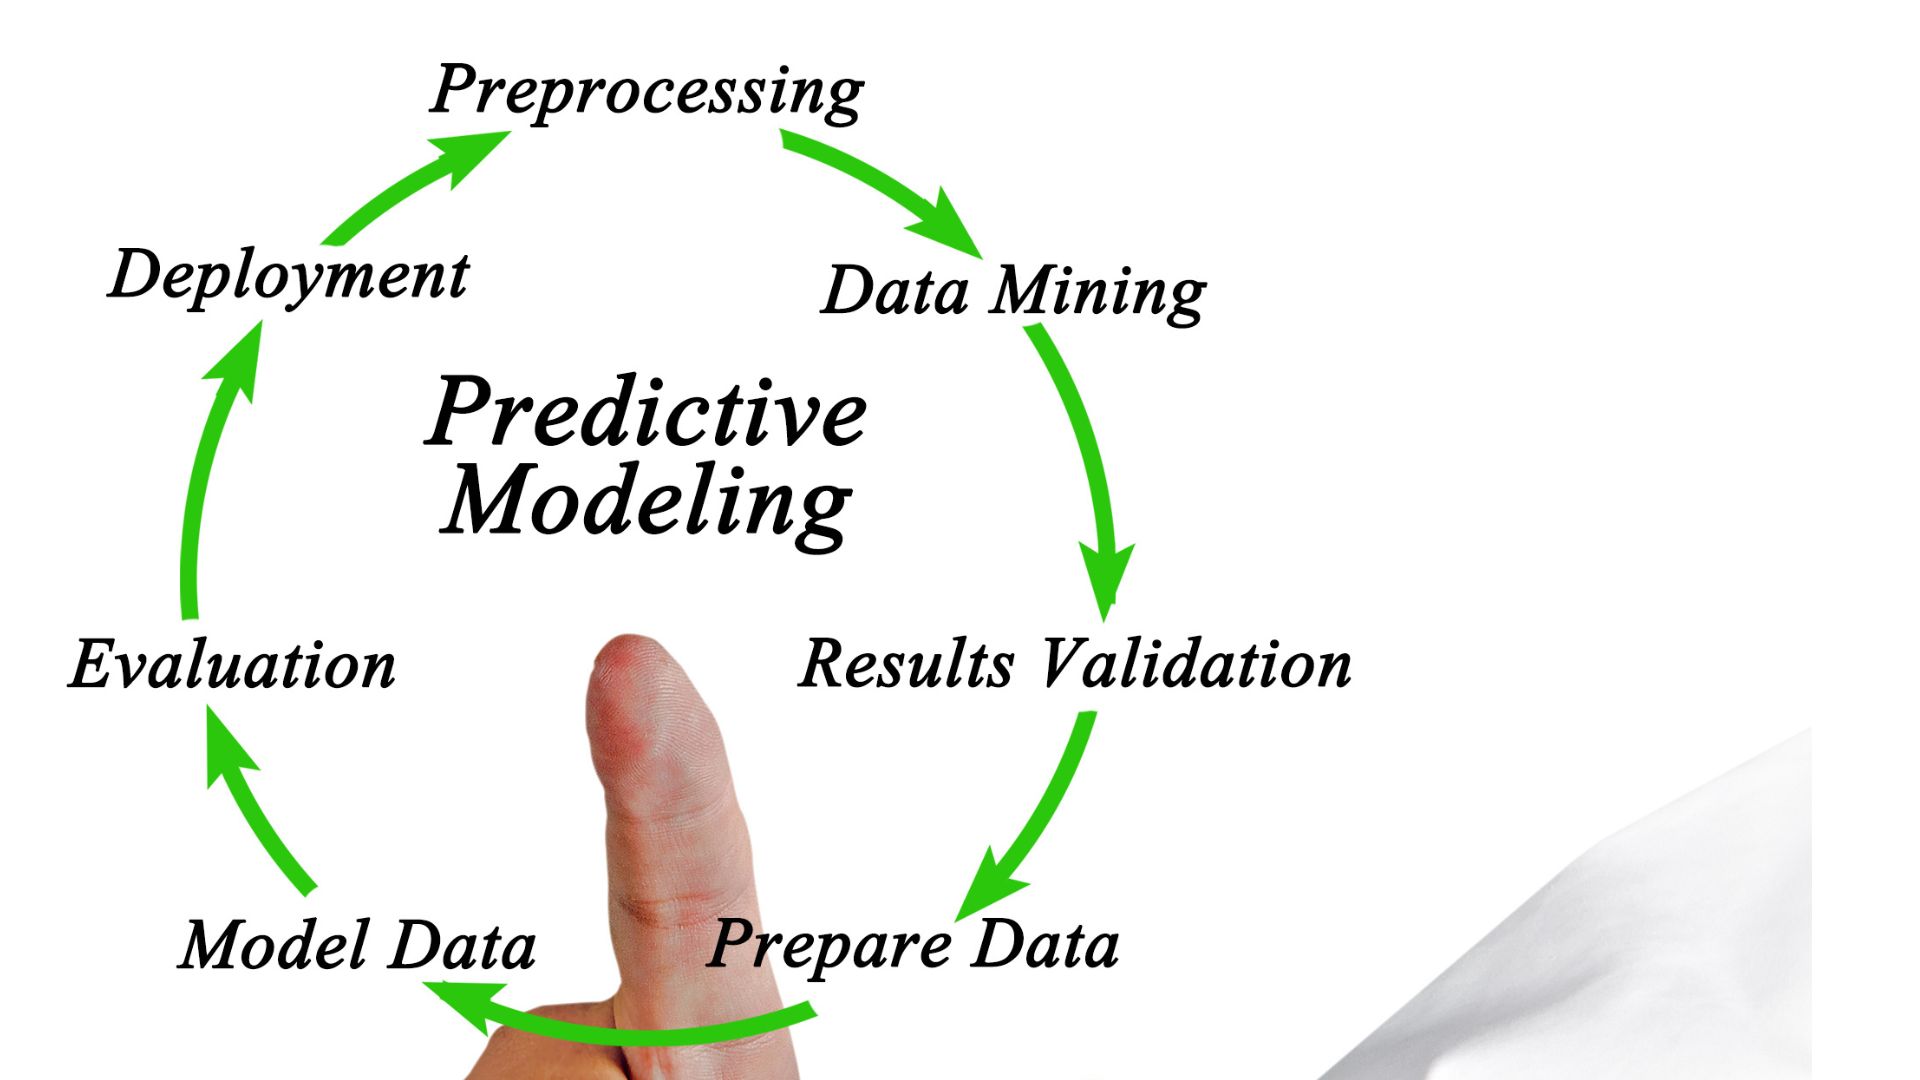 Predictive Modeling